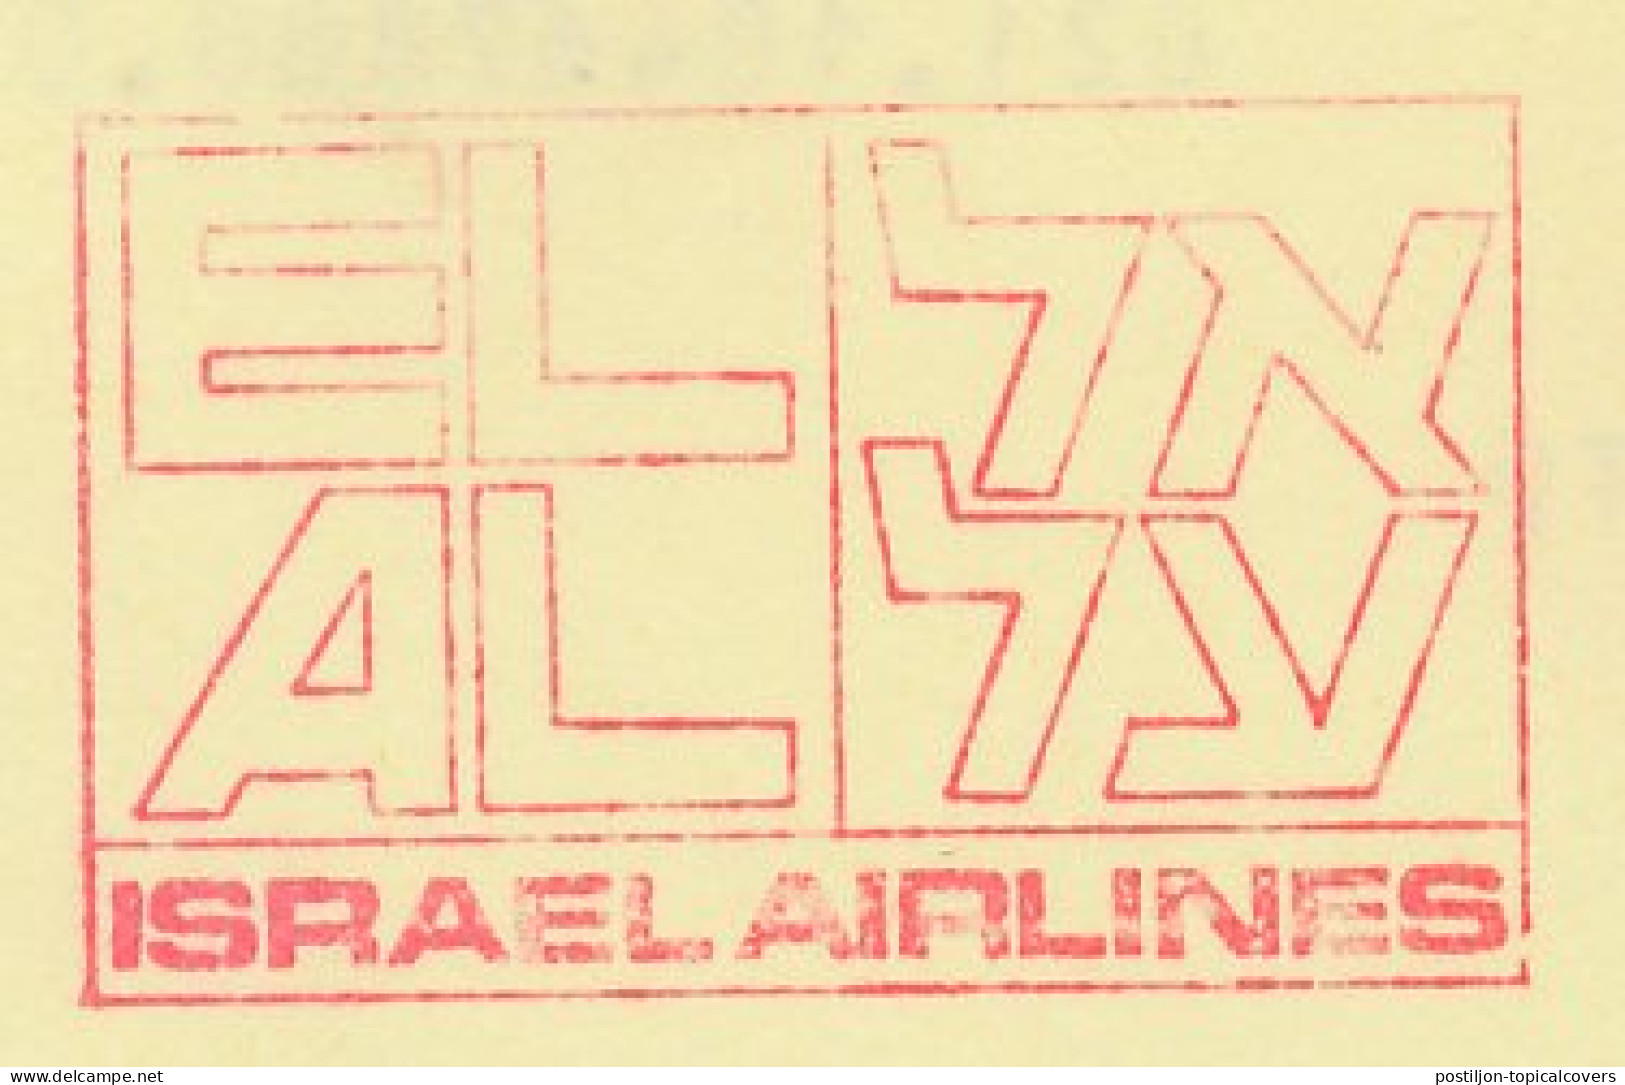 Meter Card Netherlands 1991 EL AL - Israel Airlines - Airplanes